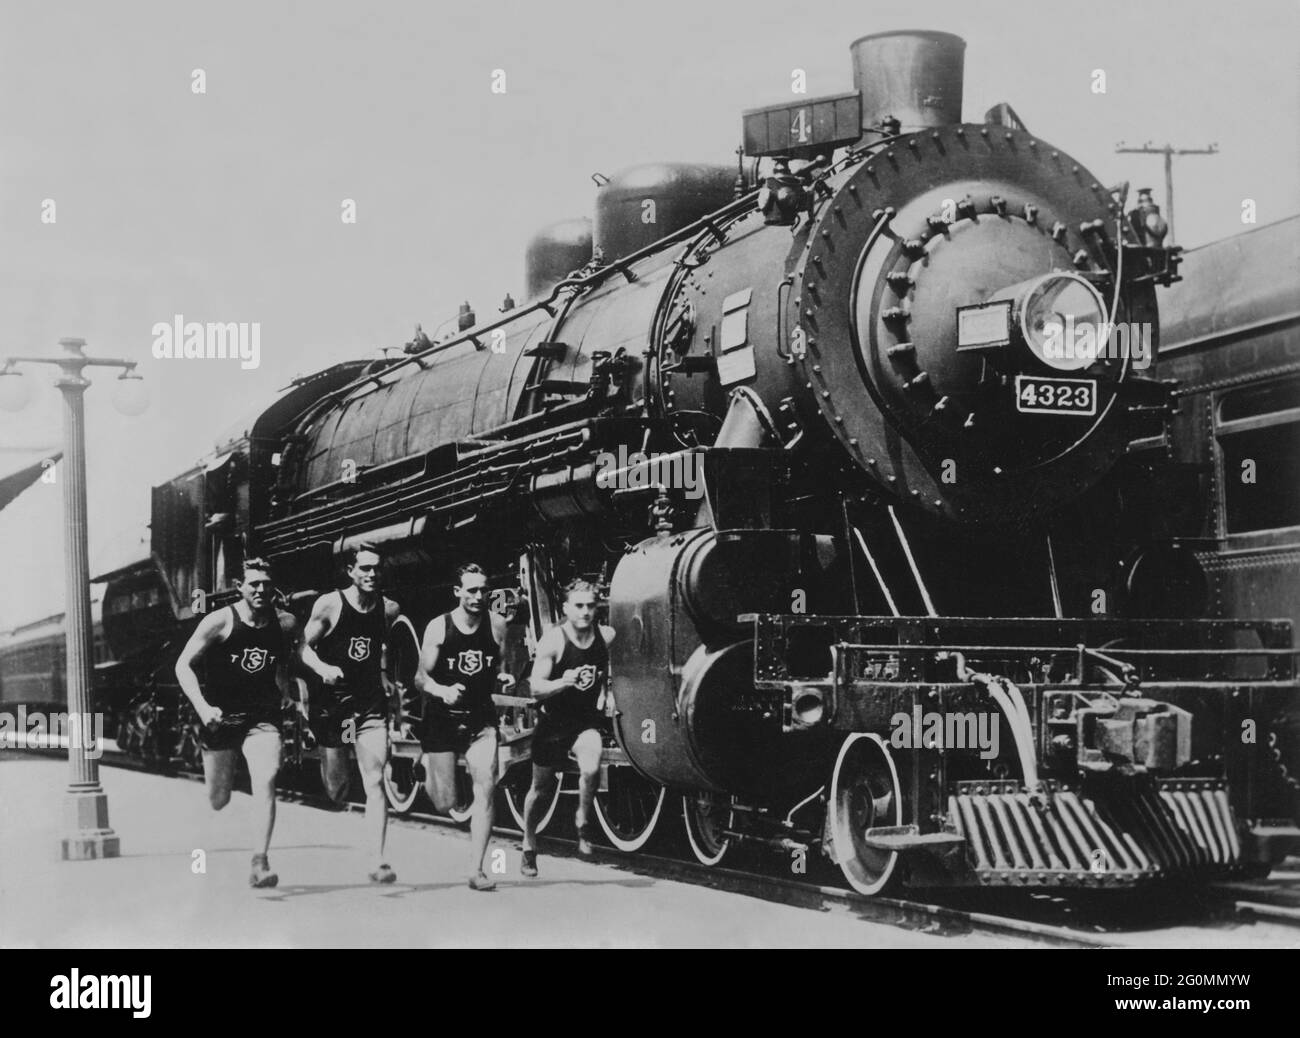 Läufer und trainieren in den 1930er Jahren. Athleten der Universität von Südkalifornien laufen neben einer riesigen Lokomotive. Zu dieser Zeit konnte diese Universität neun nationale Meisterschaften erfolgreich gewinnen. Stockfoto